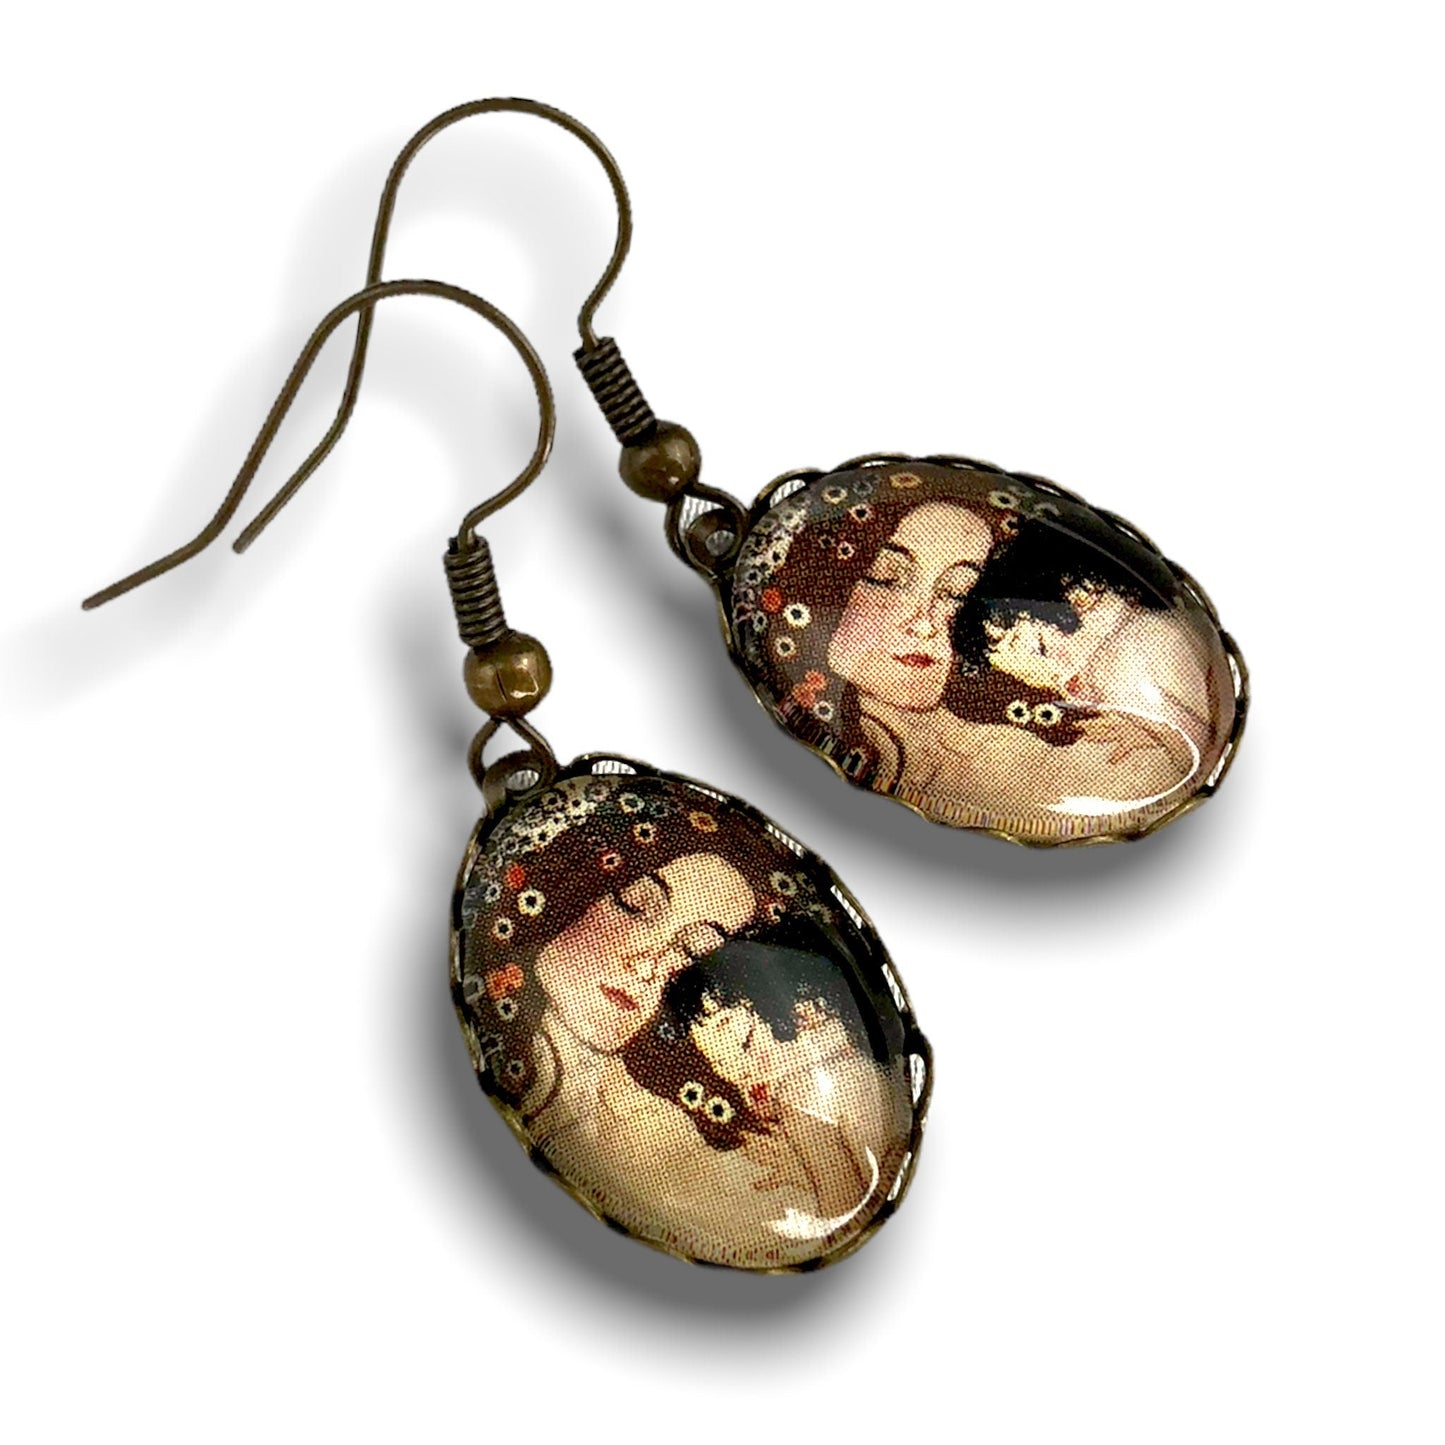 Mother child earrings - Gustav Klimt painter bronze art lovers vintage style earrings - vinohr-27